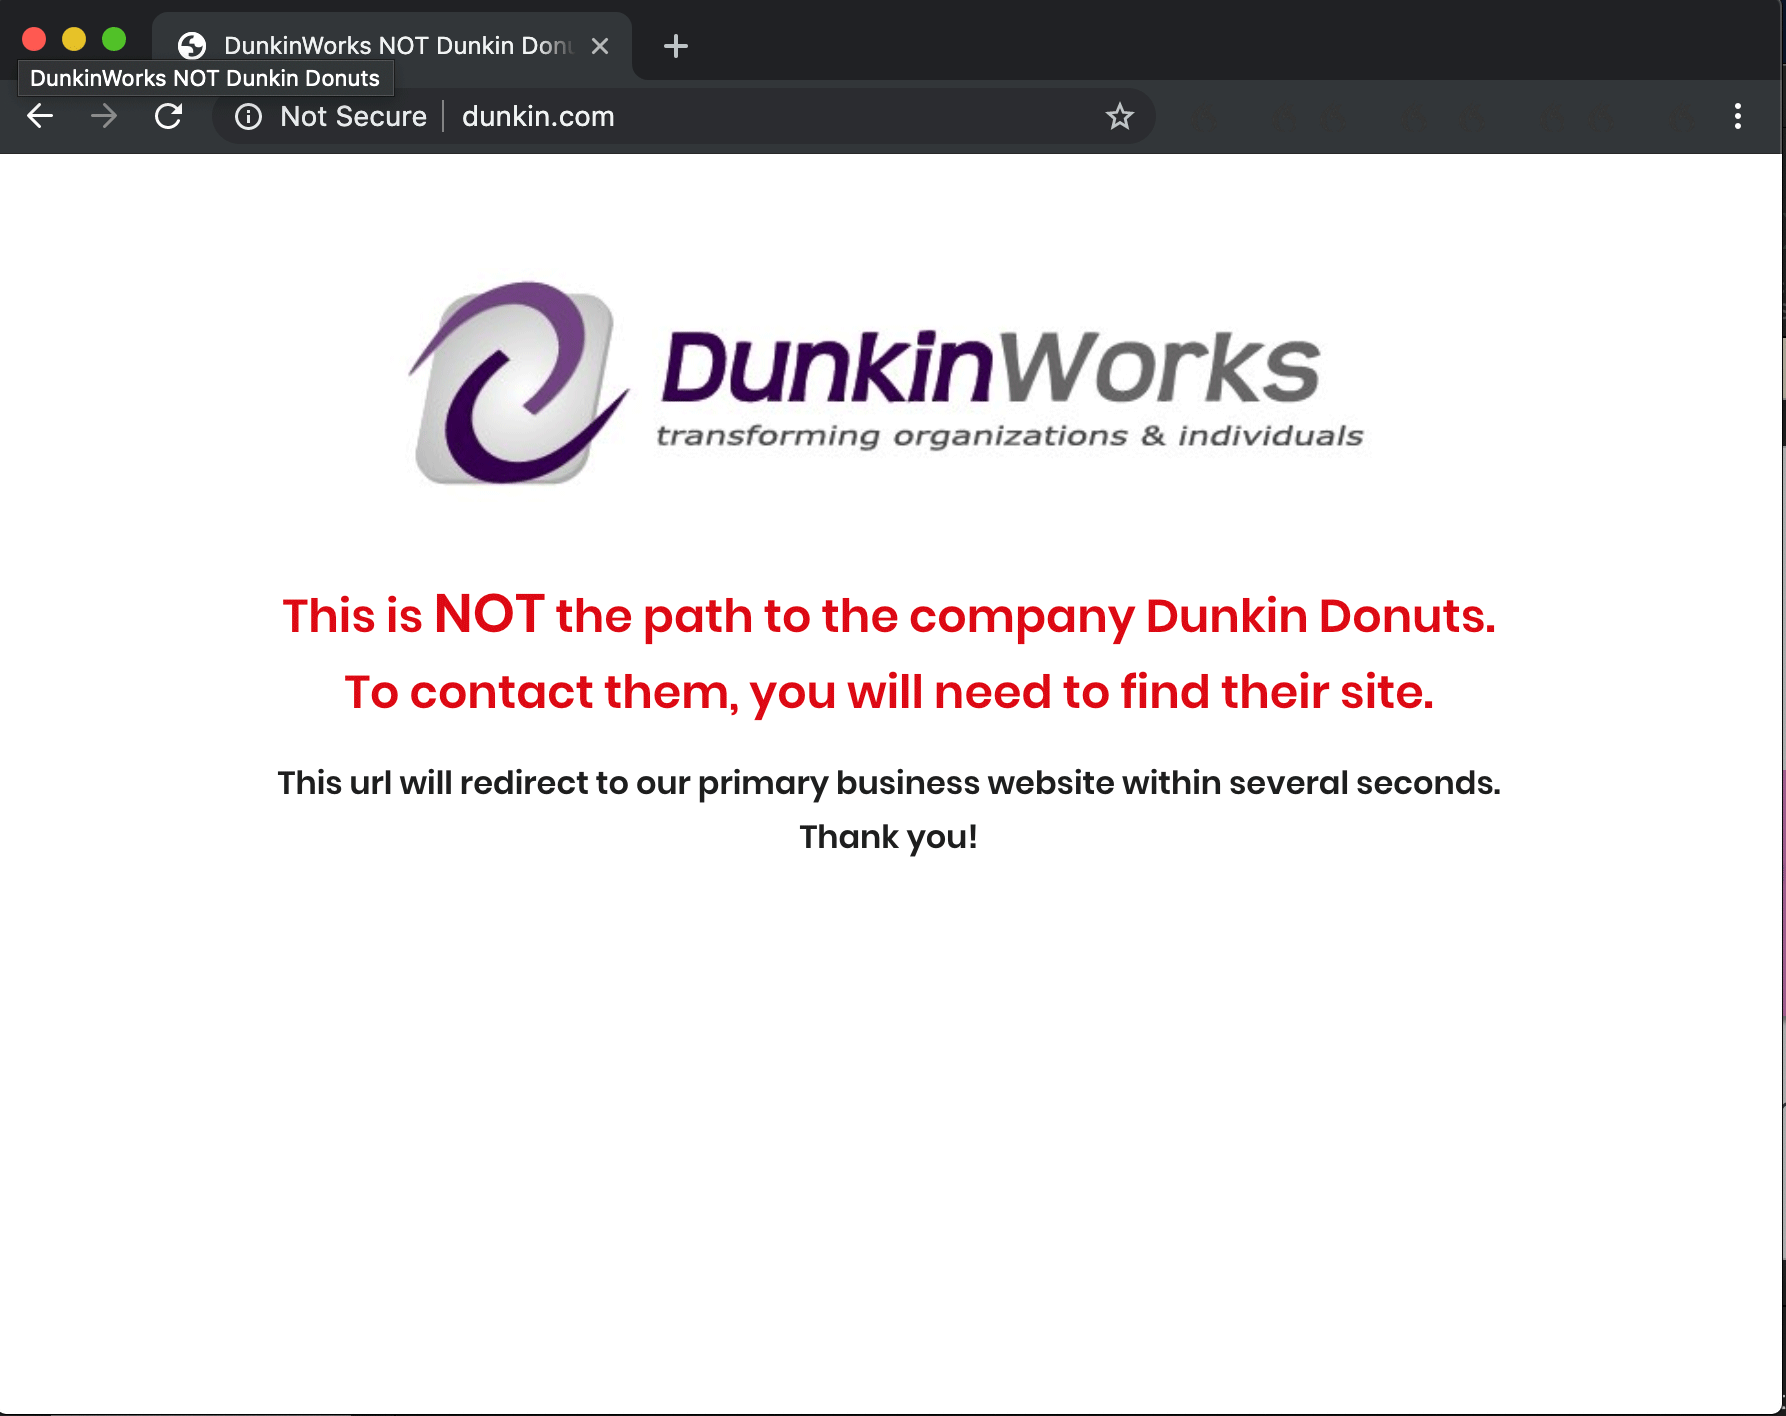 Dunkin URL